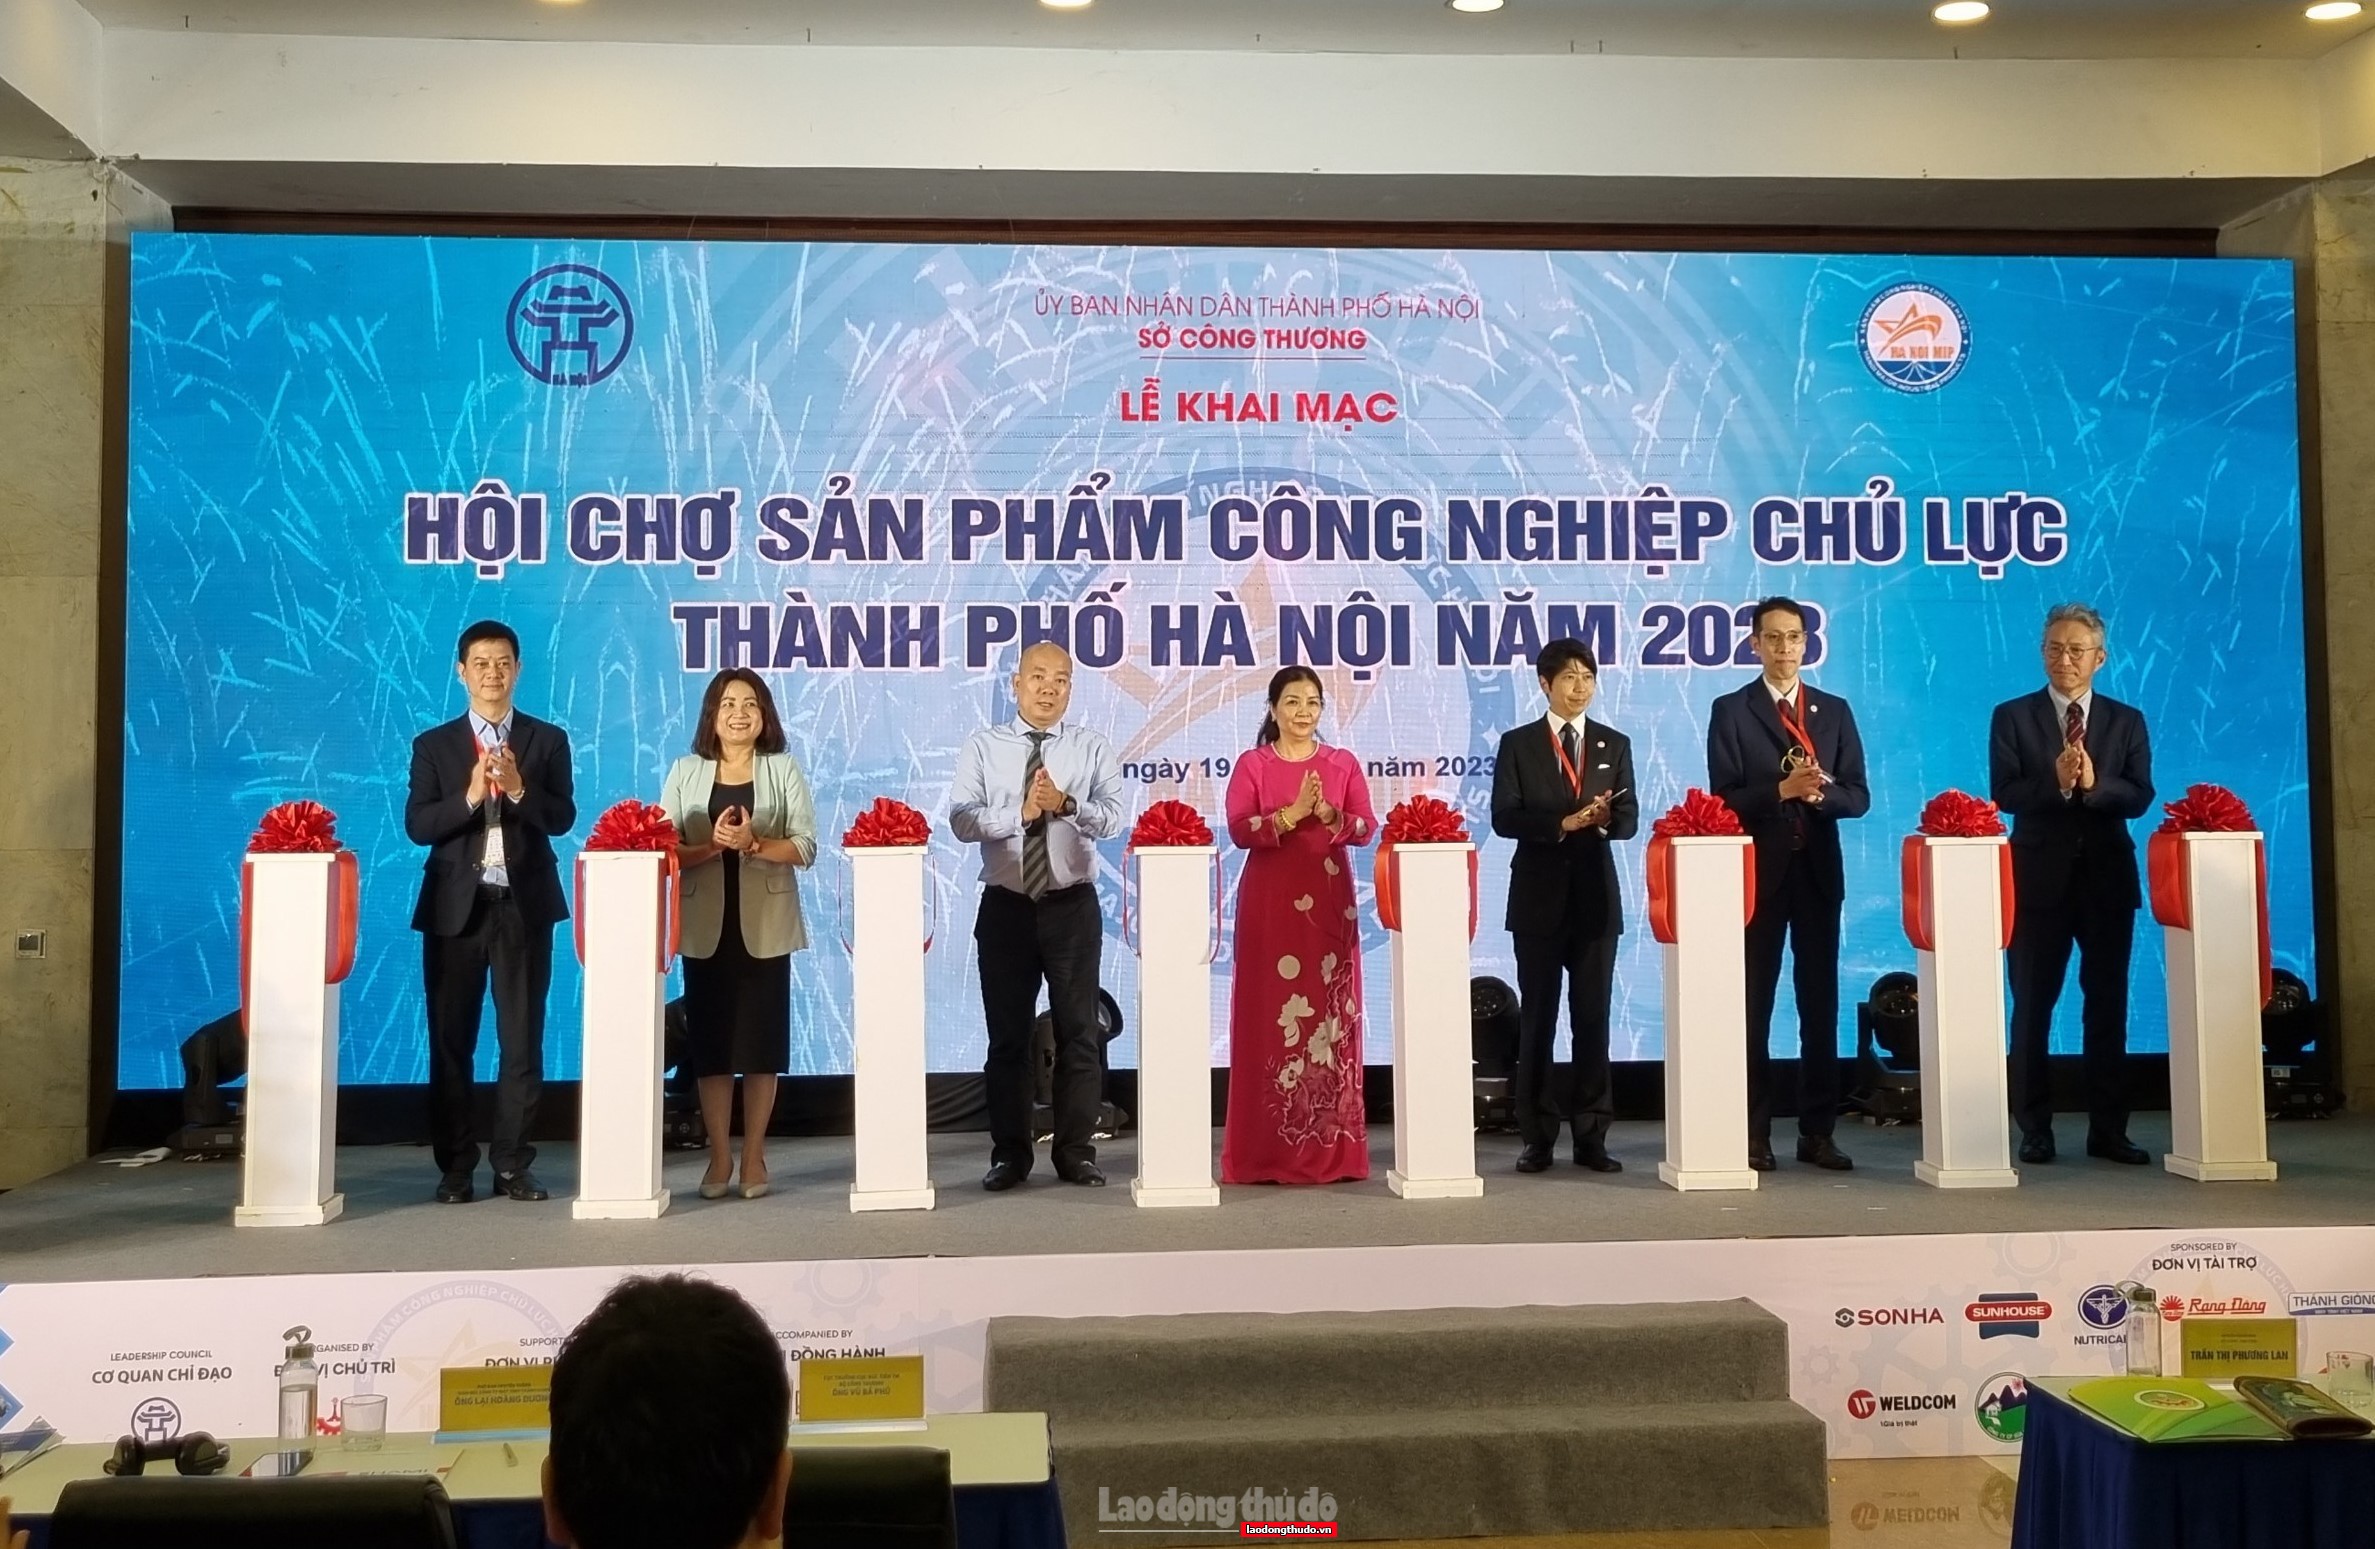 Thúc đẩy tăng trưởng sản xuất, xuất khẩu cho các sản phẩm công nghiệp chủ lực thành phố Hà Nội